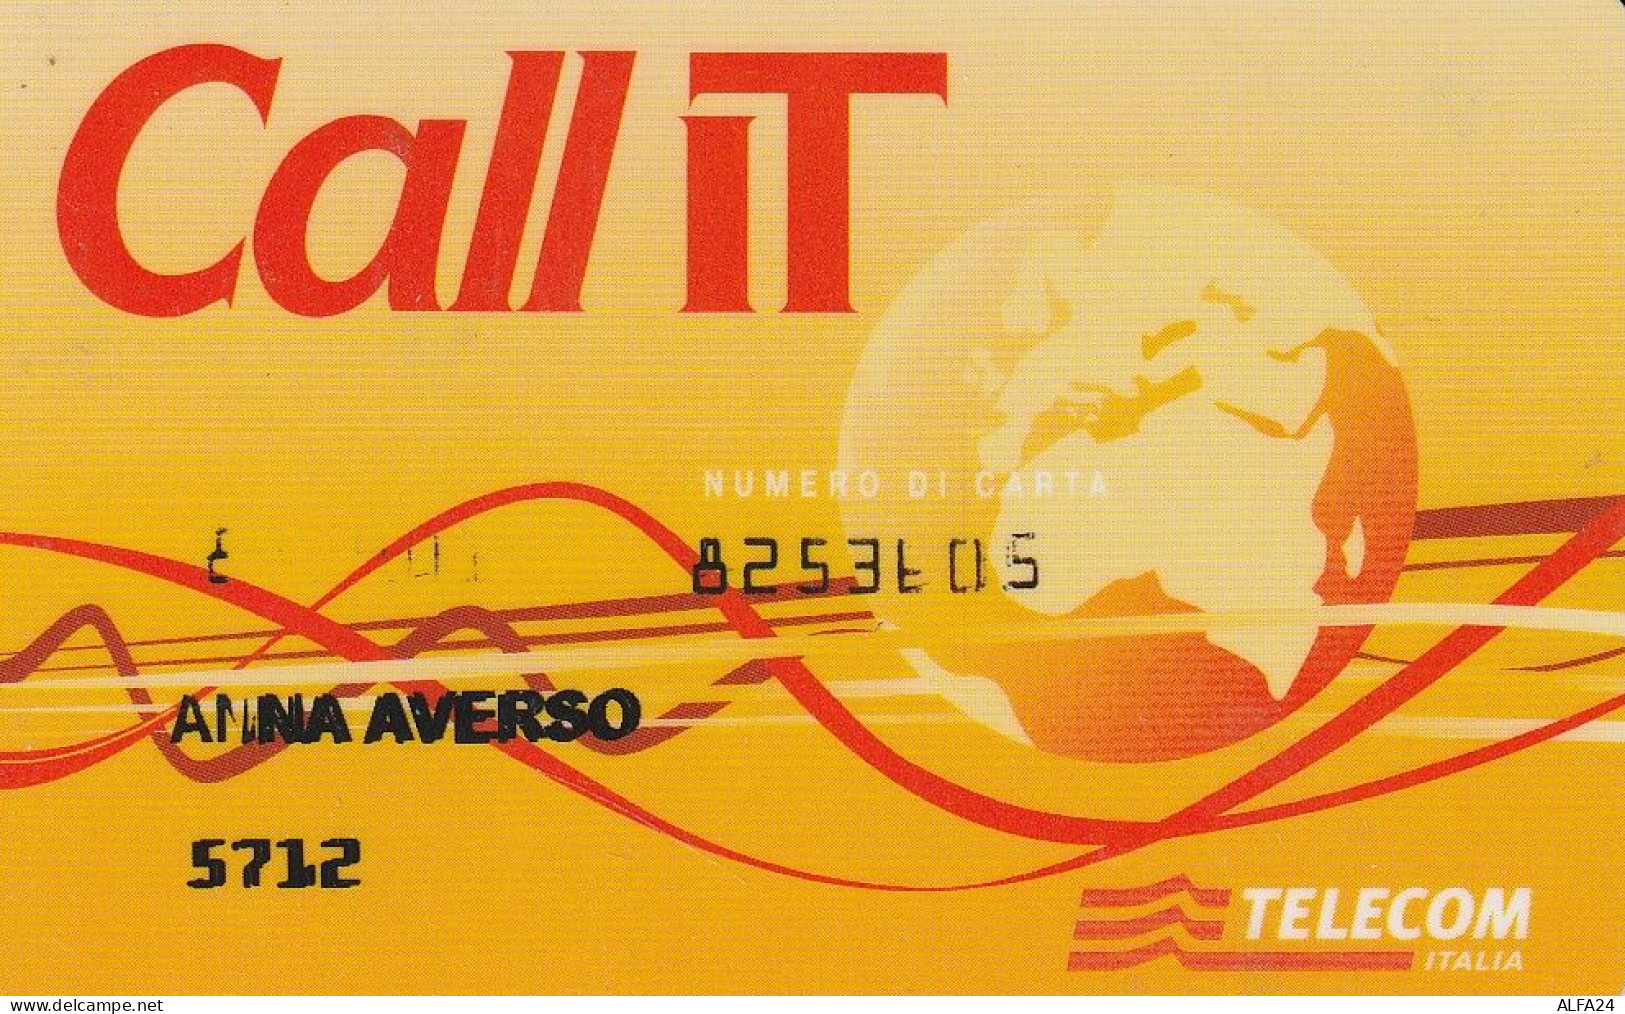 CARTA CREDITO TELECOM CALL IT  (CZ1441 - Usi Speciali